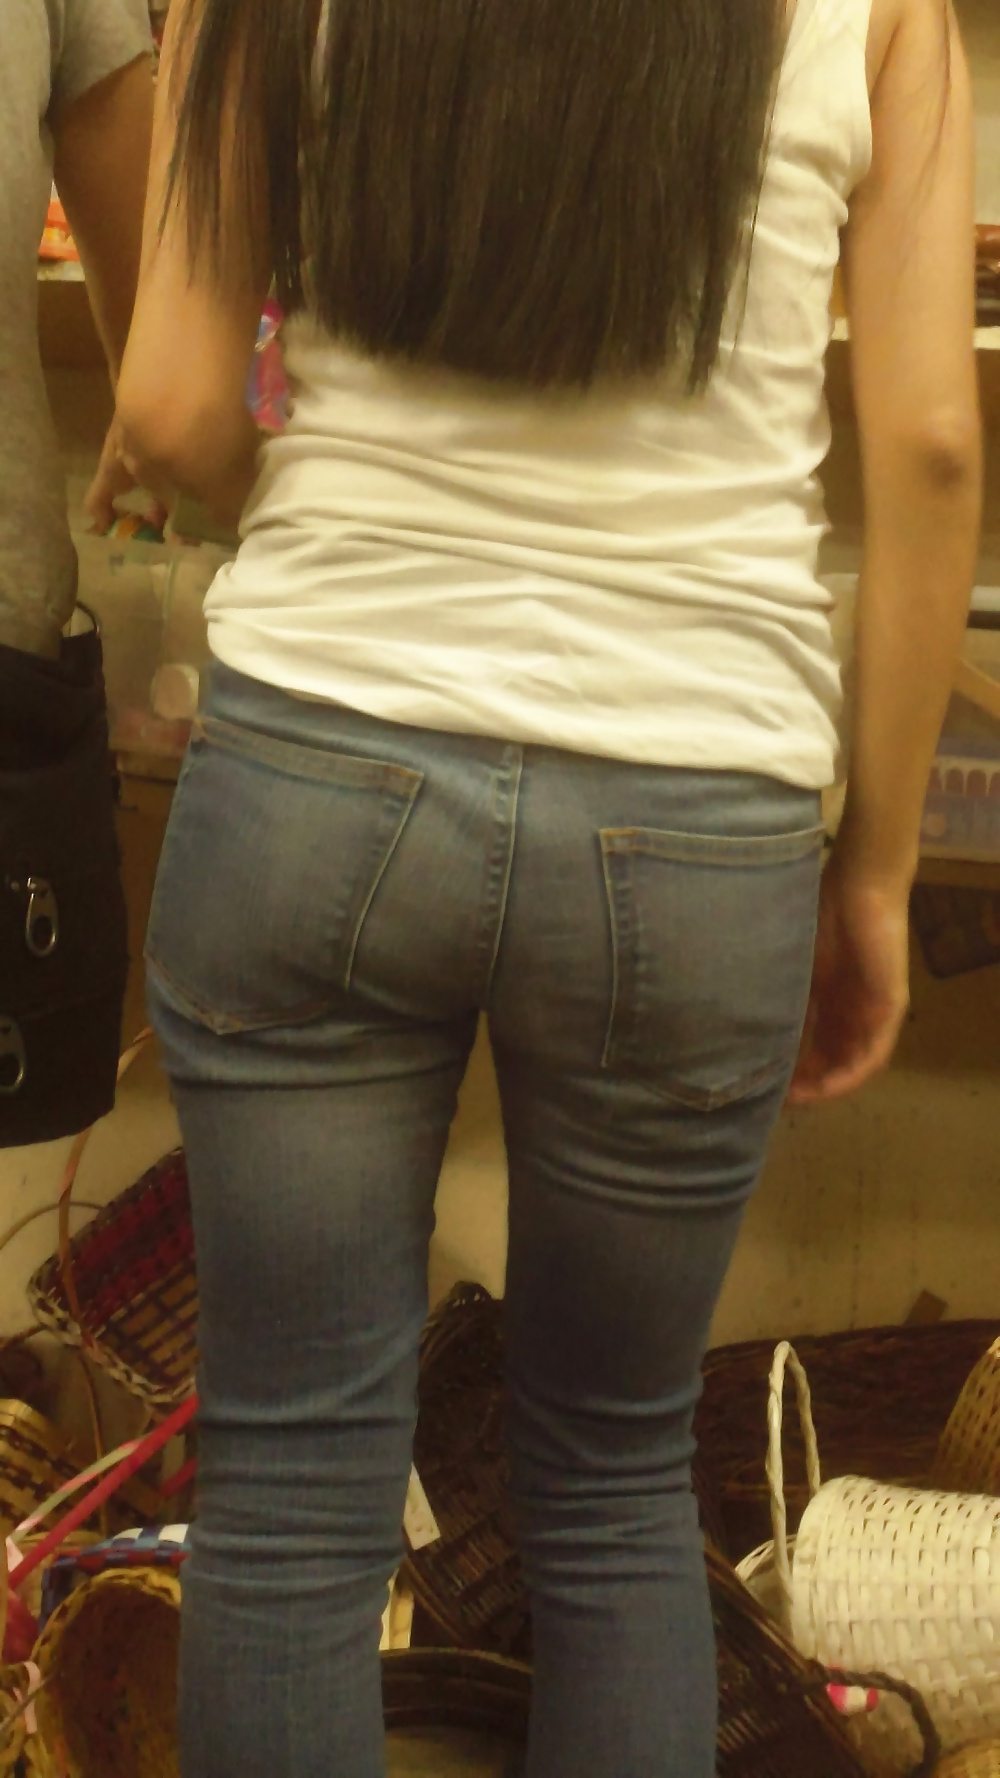 Popular teen girls ass & butt in jeans Part 6 #32009622